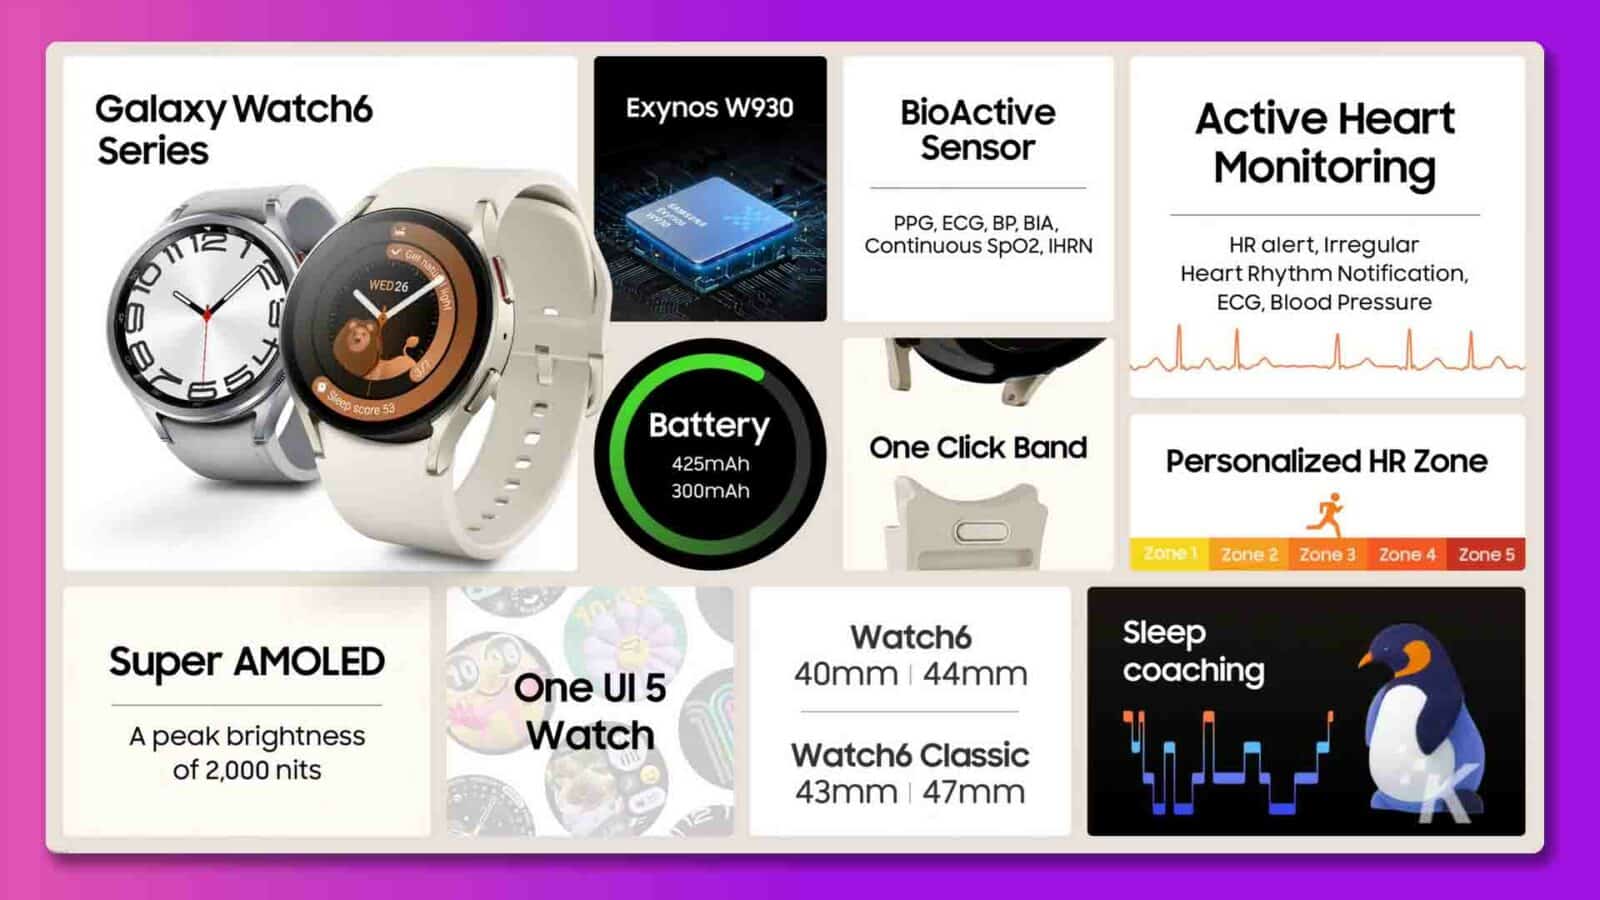 ภาพนี้แสดงคุณสมบัติของ Samsung Galaxy Watch6 รวมถึงเซ็นเซอร์ อายุการใช้งานแบตเตอรี่ จอแสดงผล และความสามารถในการติดตามการนอนหลับ ข้อความแบบเต็ม: Galaxy Watch6 Exynos W930 BioActive Active Heart Series Sensor Monitoring SAMSUNG PPG, ECG, BP, BIA, Continuous SpO2, IHRN HR alert, Irregular nature 0 Heart Rhythm Notification, WED26 light ECG, Blood Pressure 1 Stepp Score 53 Battery One Click Band 425mAh โซน HR ส่วนบุคคล 300mAh โซน 1 โซน 2 โซน 3 โซน 4 โซน 5 Super AMOLED Watch6 Sleep One UI 5 40mm | การฝึกสอน 44 มม. ความสว่างสูงสุดของนาฬิกา 2,000 nits Watch6 Classic 43mm | 47มม